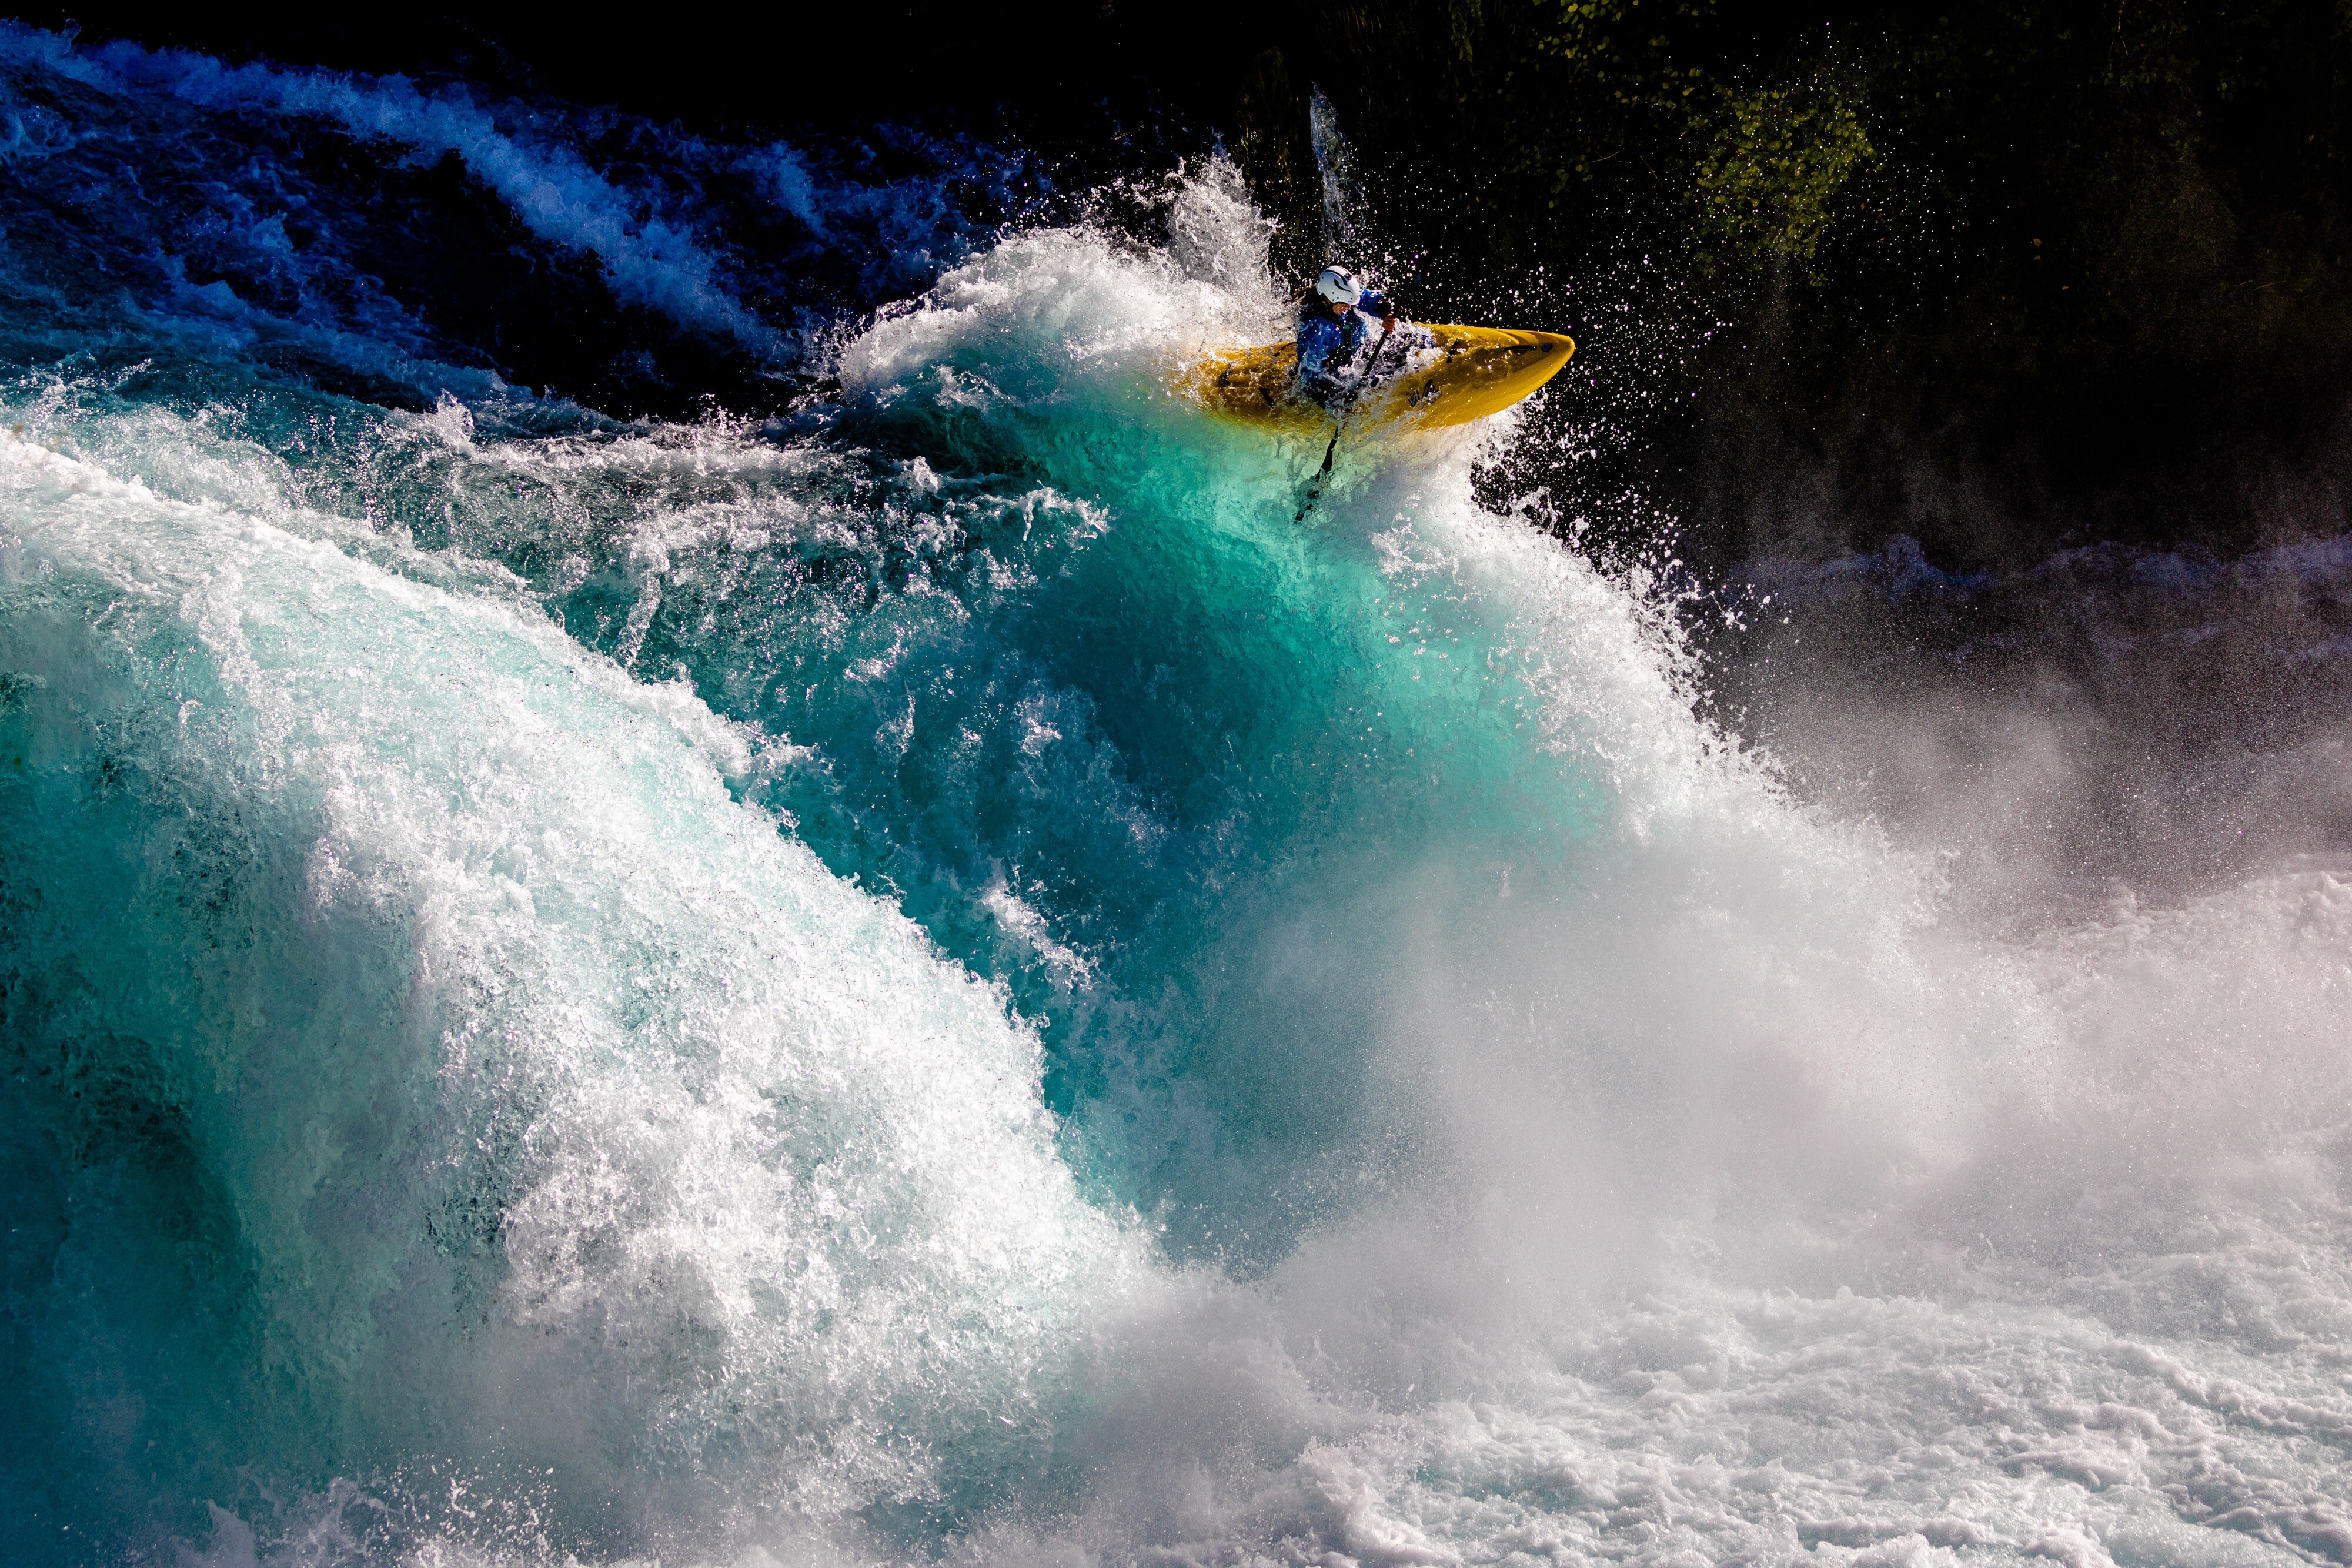 Победитель в категории «Энергия», 2021. Спортсмен Ривер Муттон на водопадах Хука, возле озера Таупо в Новой Зеландии. Фотограф Род Хилл